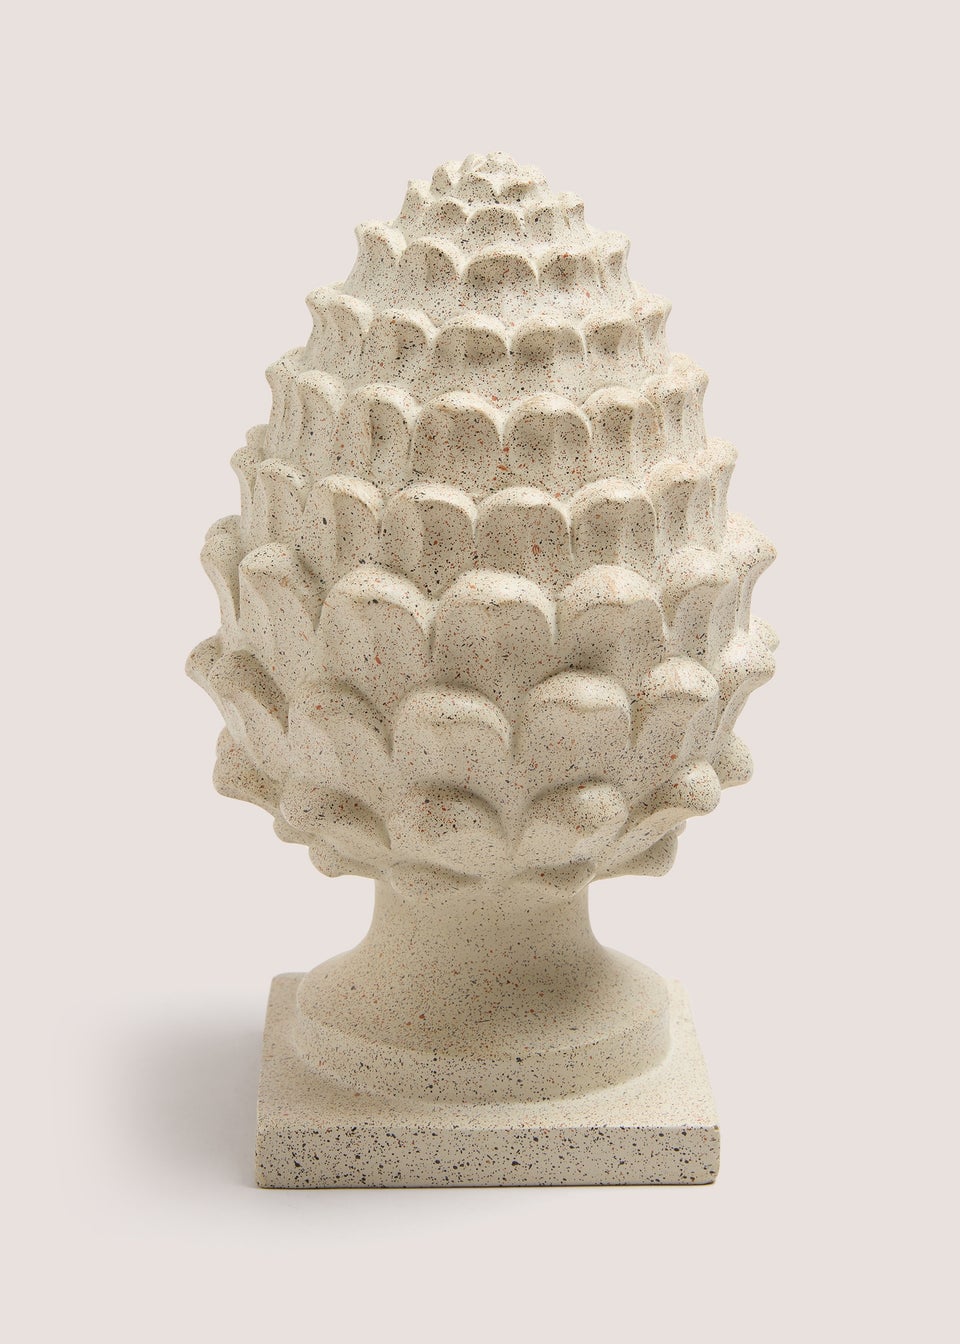 Cream Artichoke Ornament (22.9cm x 14.3cm x 13.7cm)